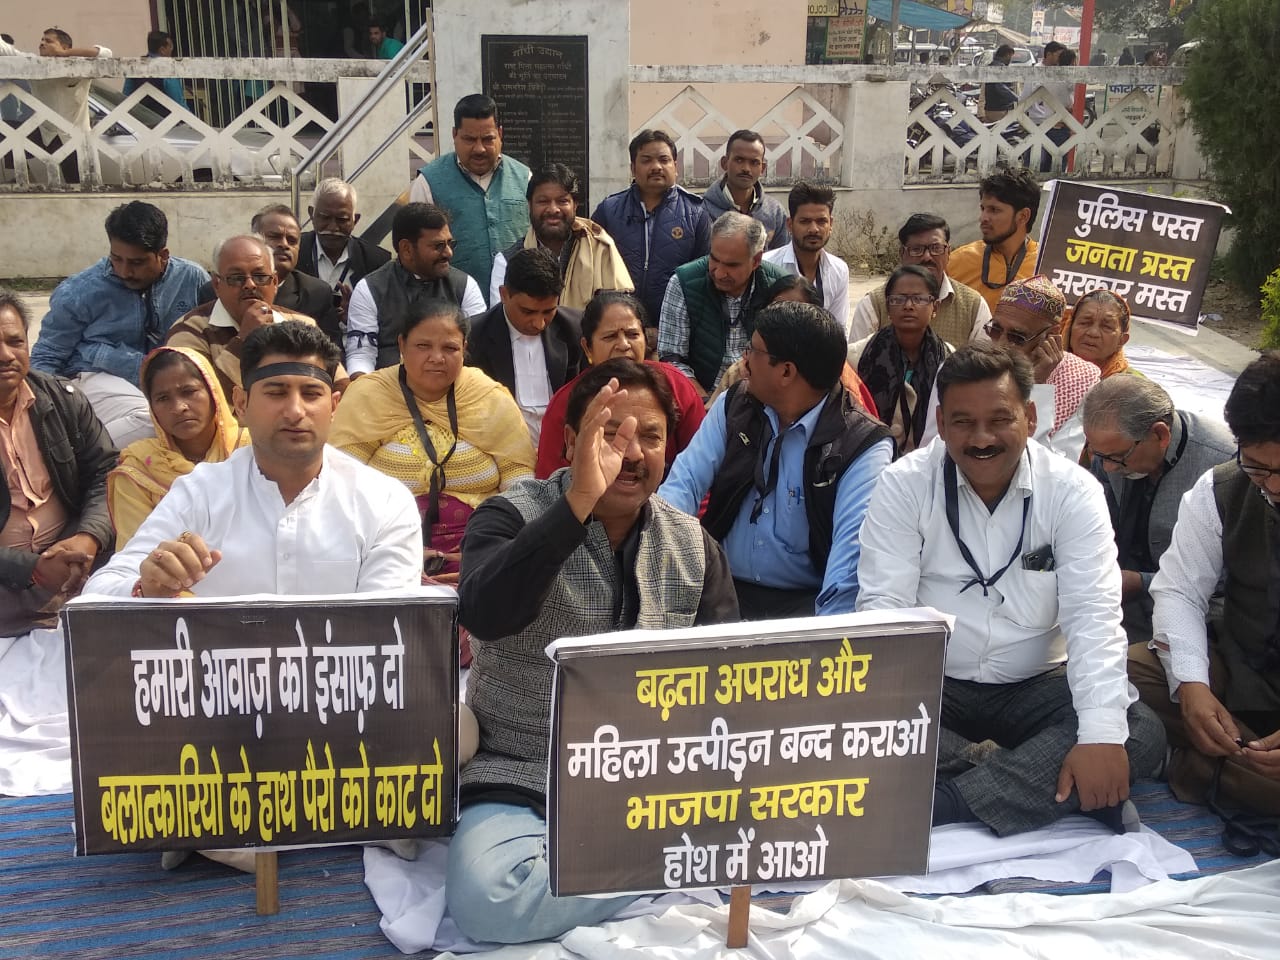 उत्तर प्रदेश में बढ़ते यौन उत्पीड़न और हत्याओं के विरोध में मुख्यमंत्री के झांसी आगमन पर हुआ विरोध-प्रदर्शन | New India Times